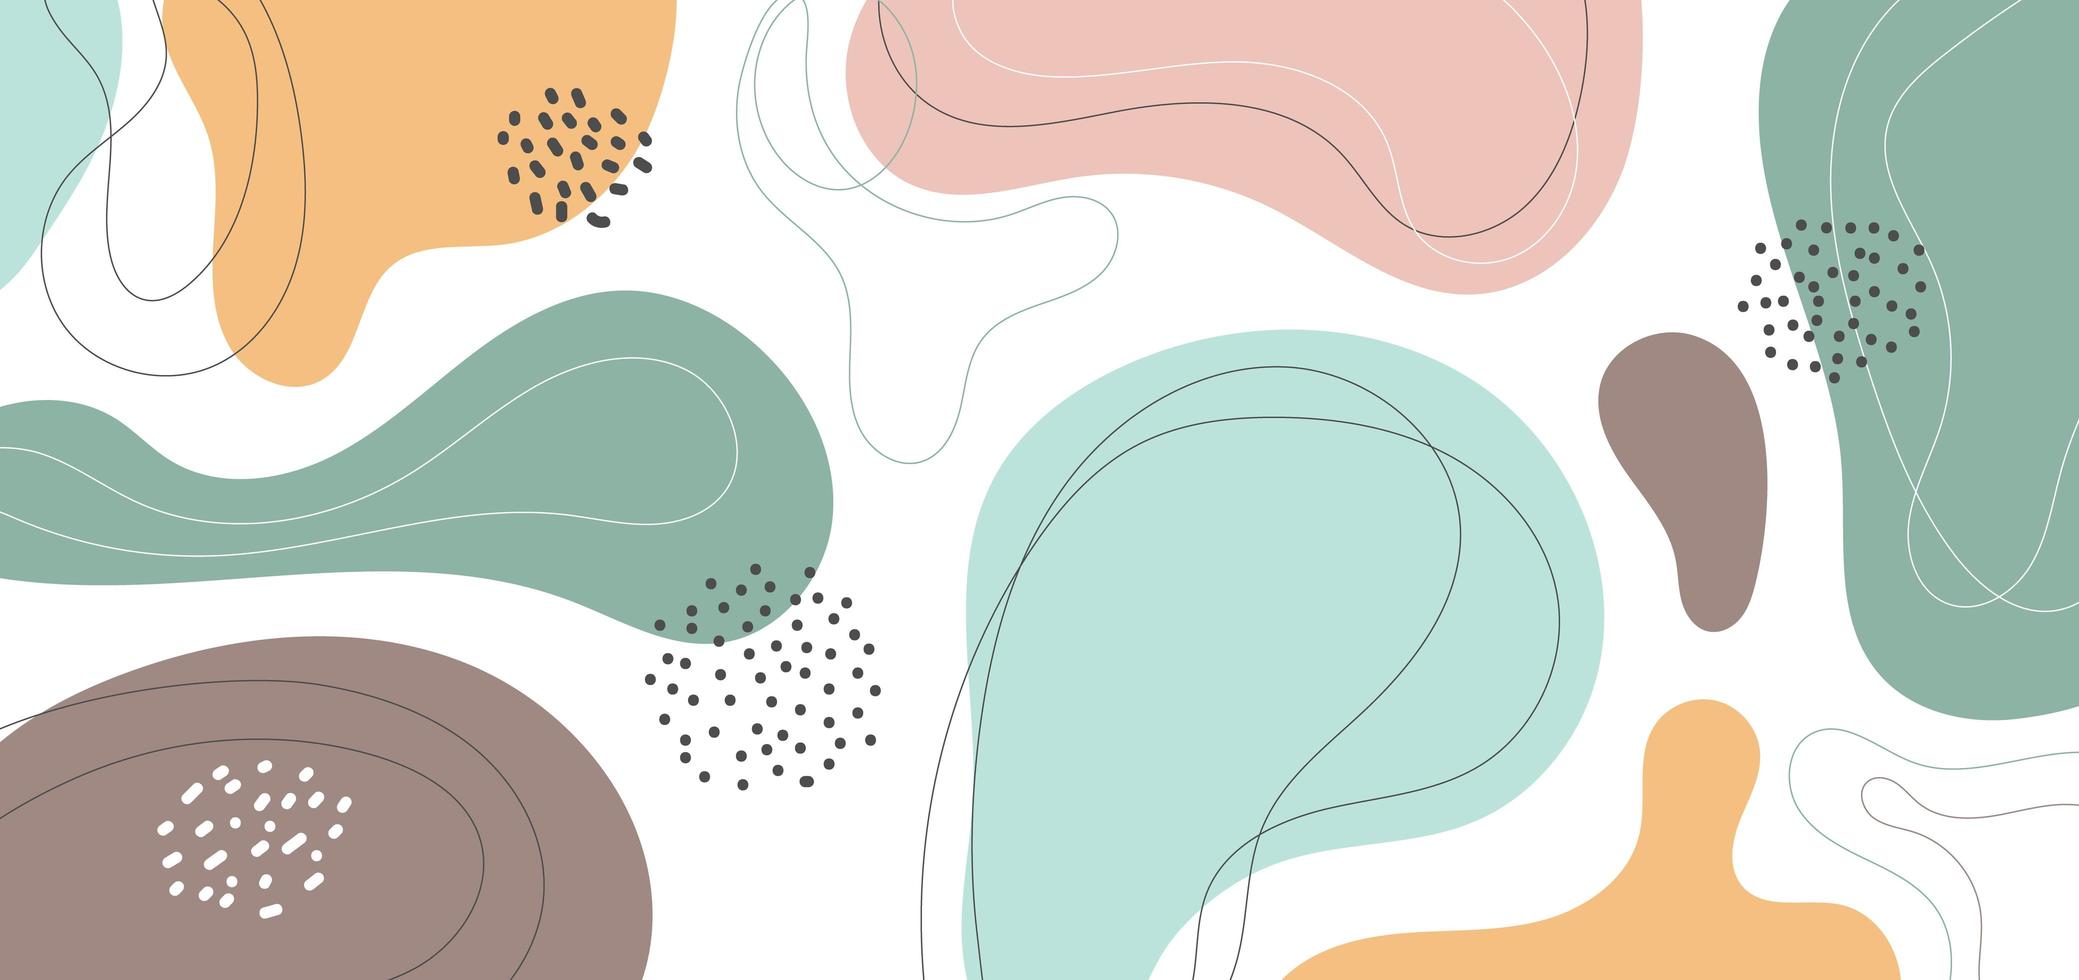 banner web design modello astratto minimo composizione di forme organiche sfondo di colore pastello in stile collage contemporaneo alla moda. vettore